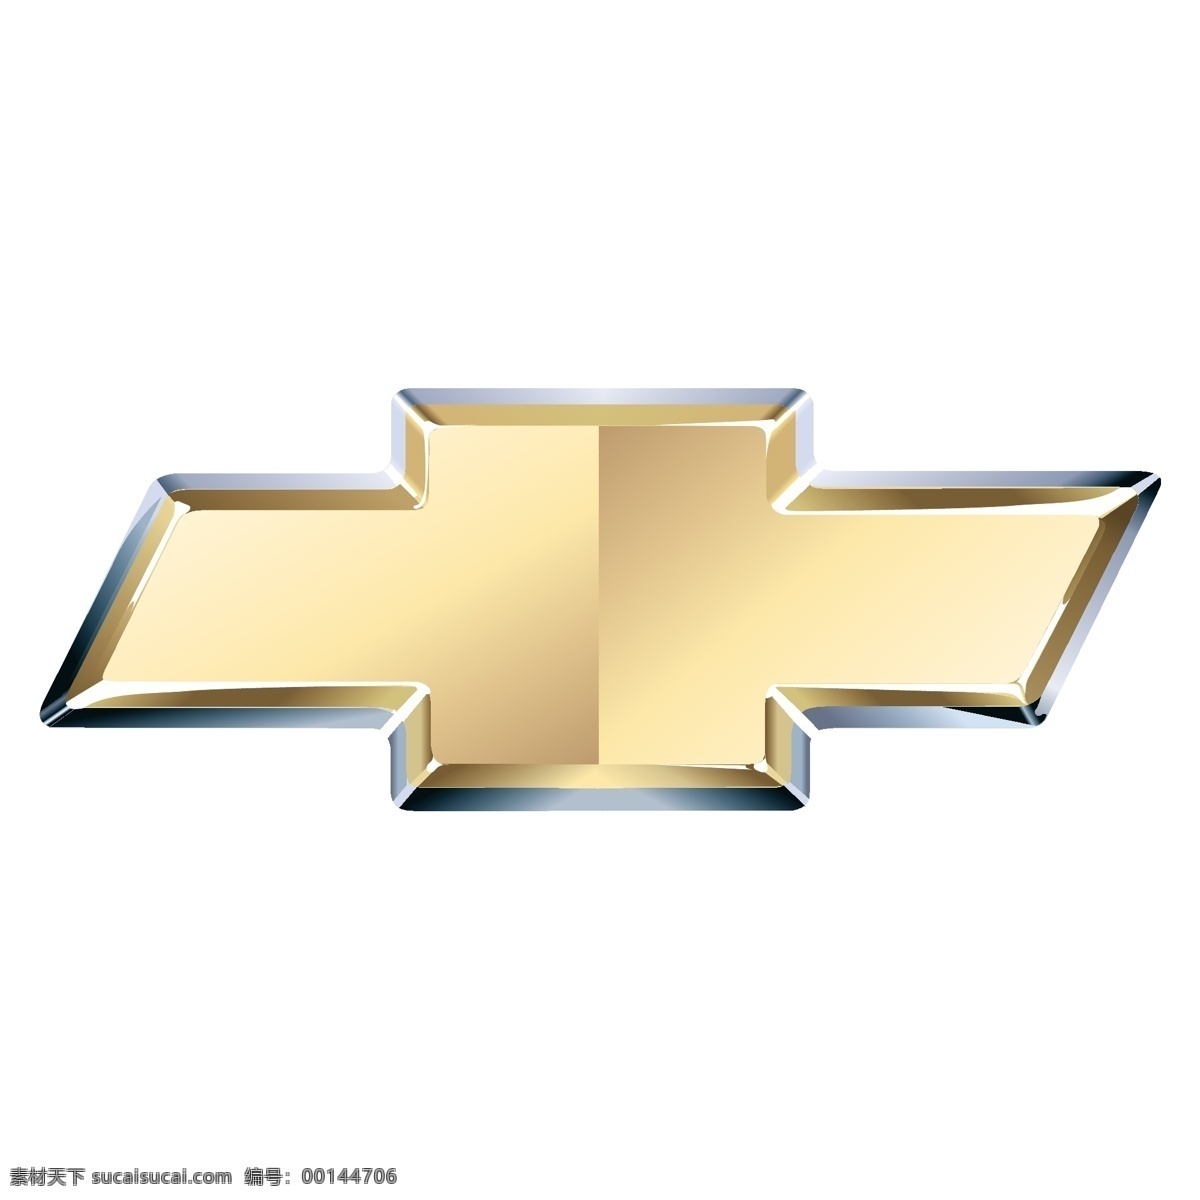 雪佛兰 汽车 标志 雪佛兰标志 汽车标志 标识标志图标 企业 logo 矢量图库